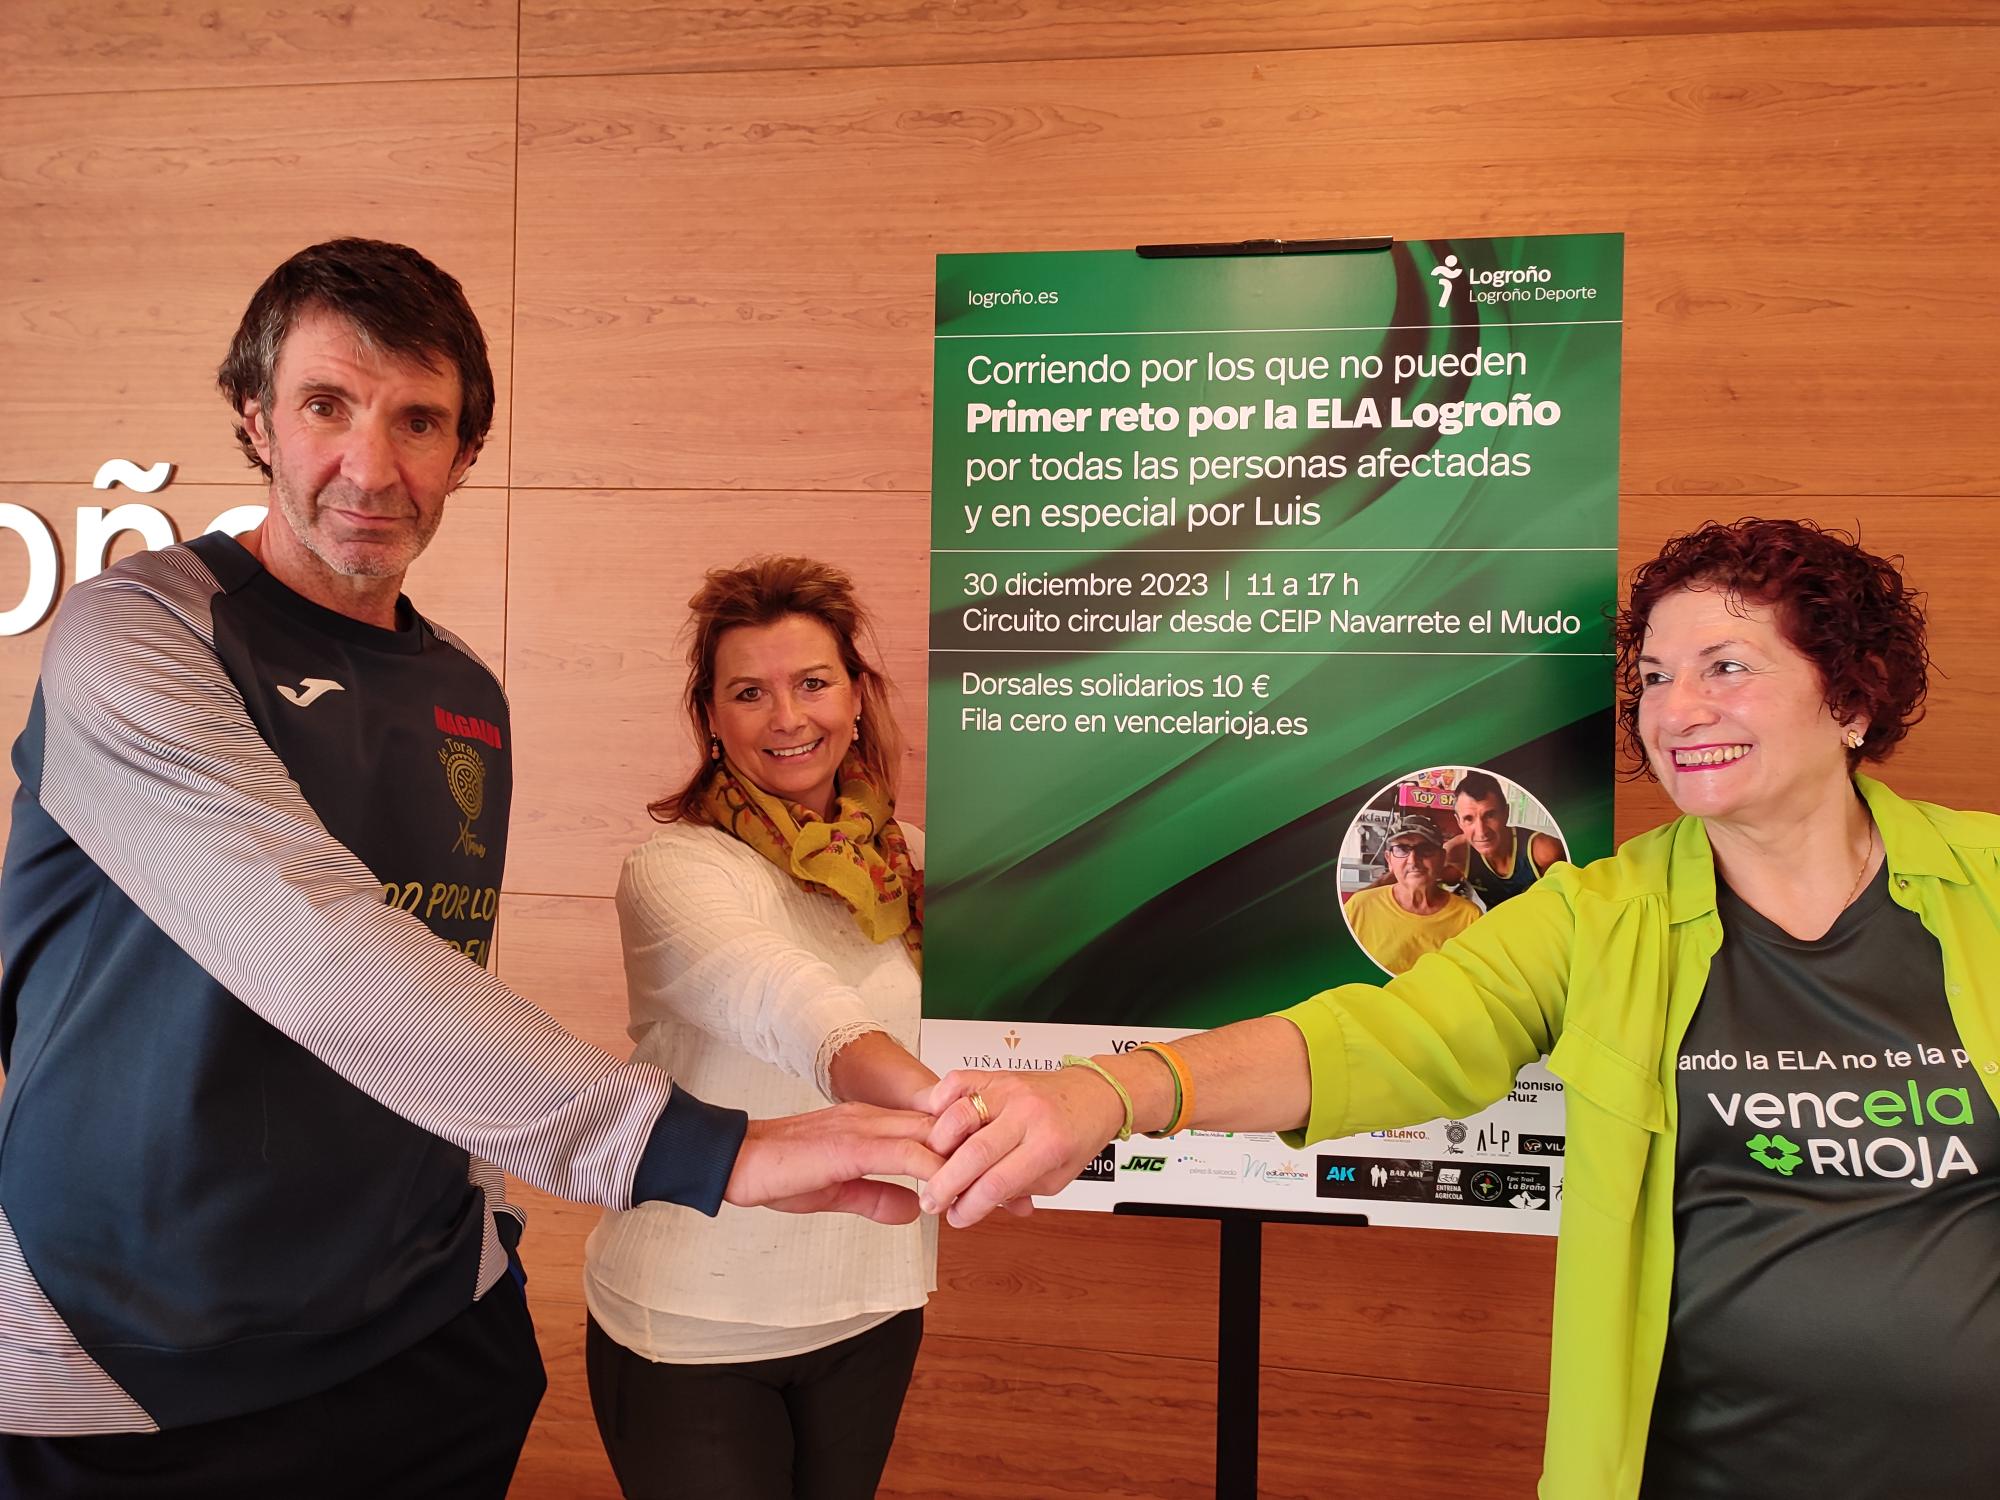 Imagen Logroño Deporte y Corriendo por los que no pueden organizan una carrera solidaria a favor de los afectados por la ELA en La Rioja